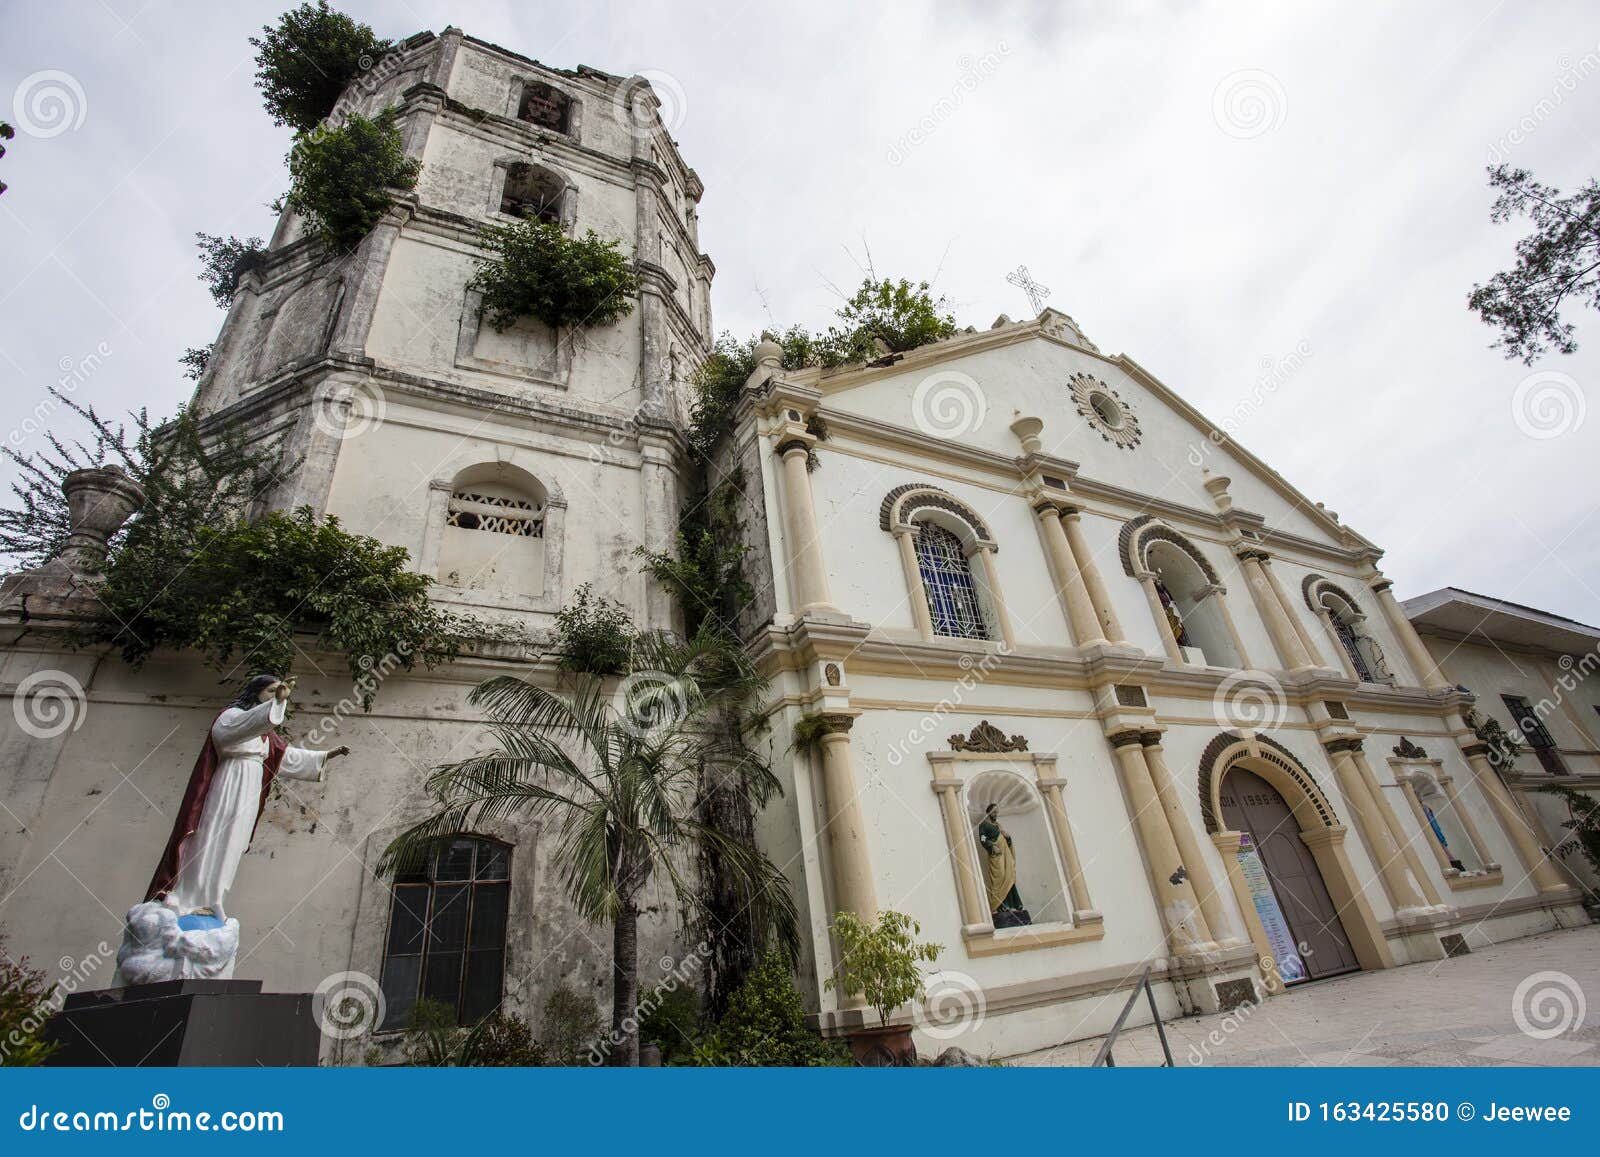 450年的历史足以使圣奥古斯丁教堂成为菲律宾现存最古老的建筑|菲律宾|旅游|圣奥古斯丁_新浪新闻